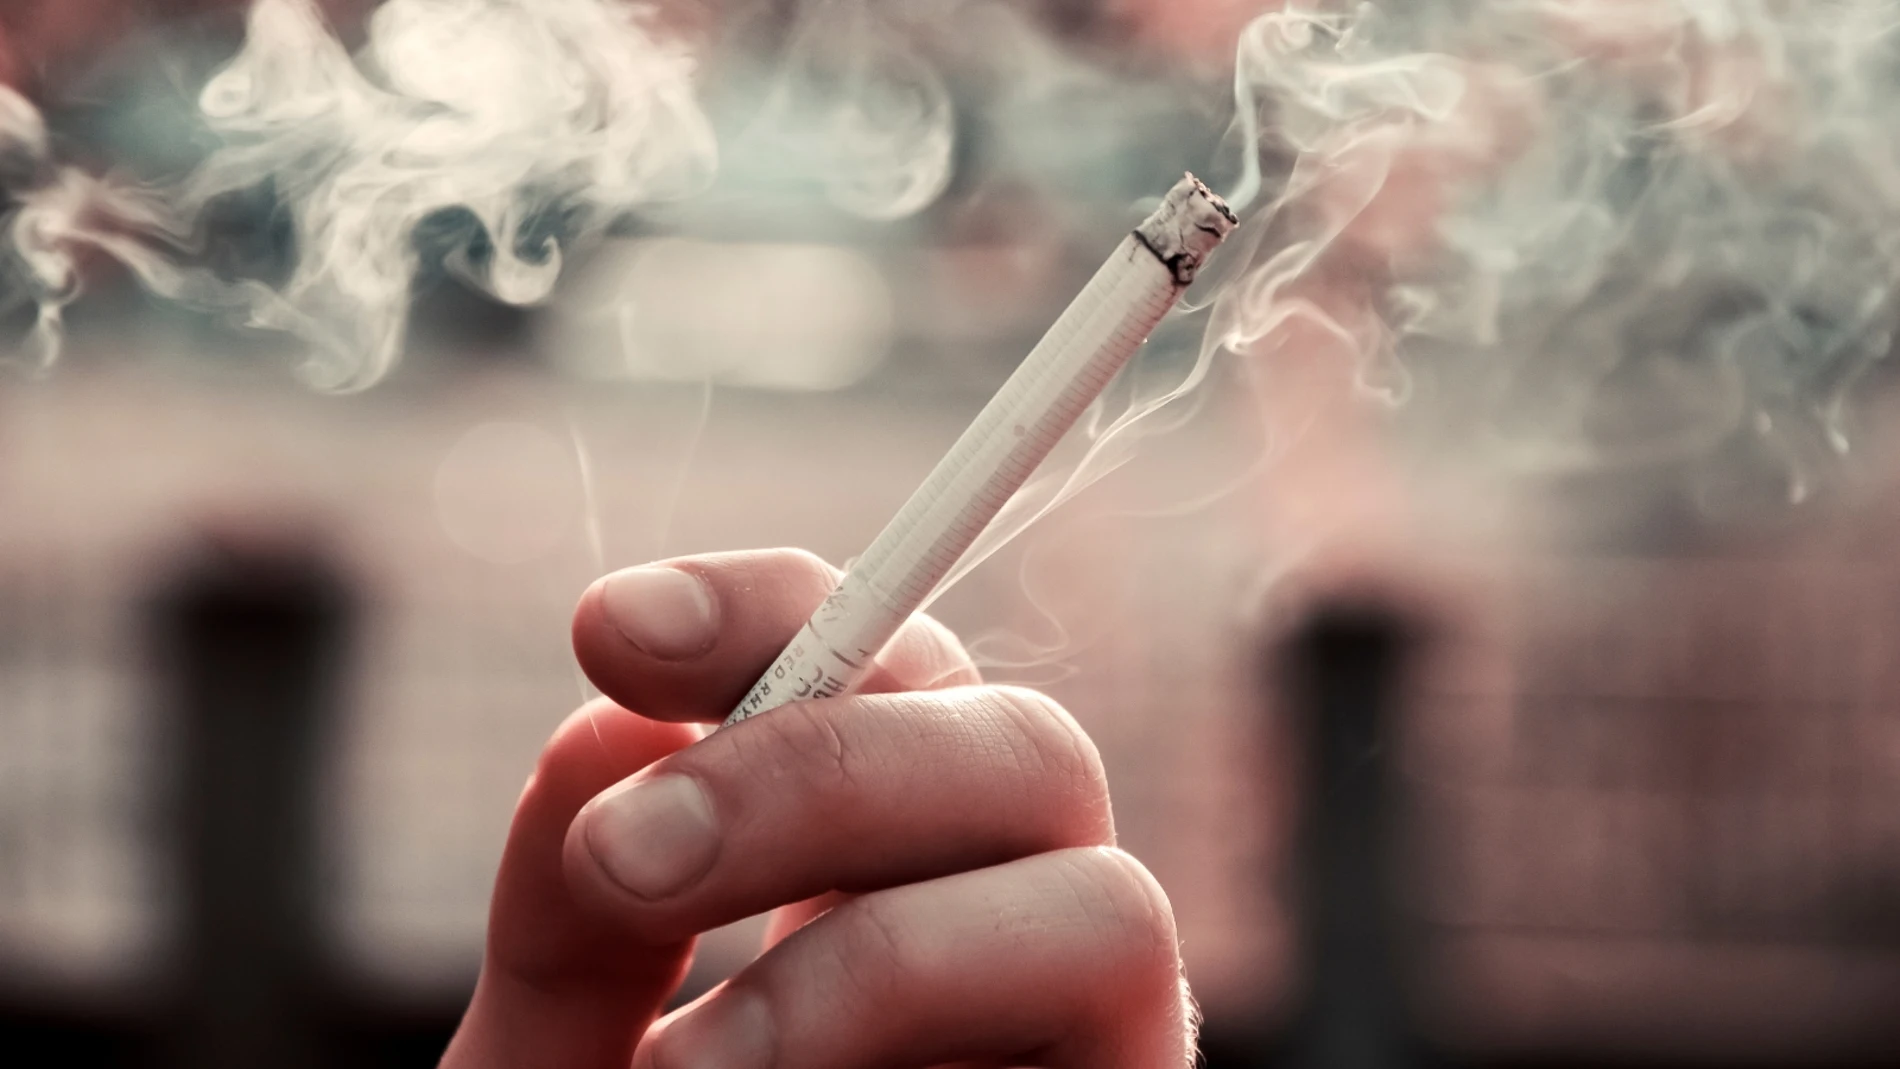 Un estudio revela que las sustancias tóxicas del tabaco persisten en las superficies de los hogares